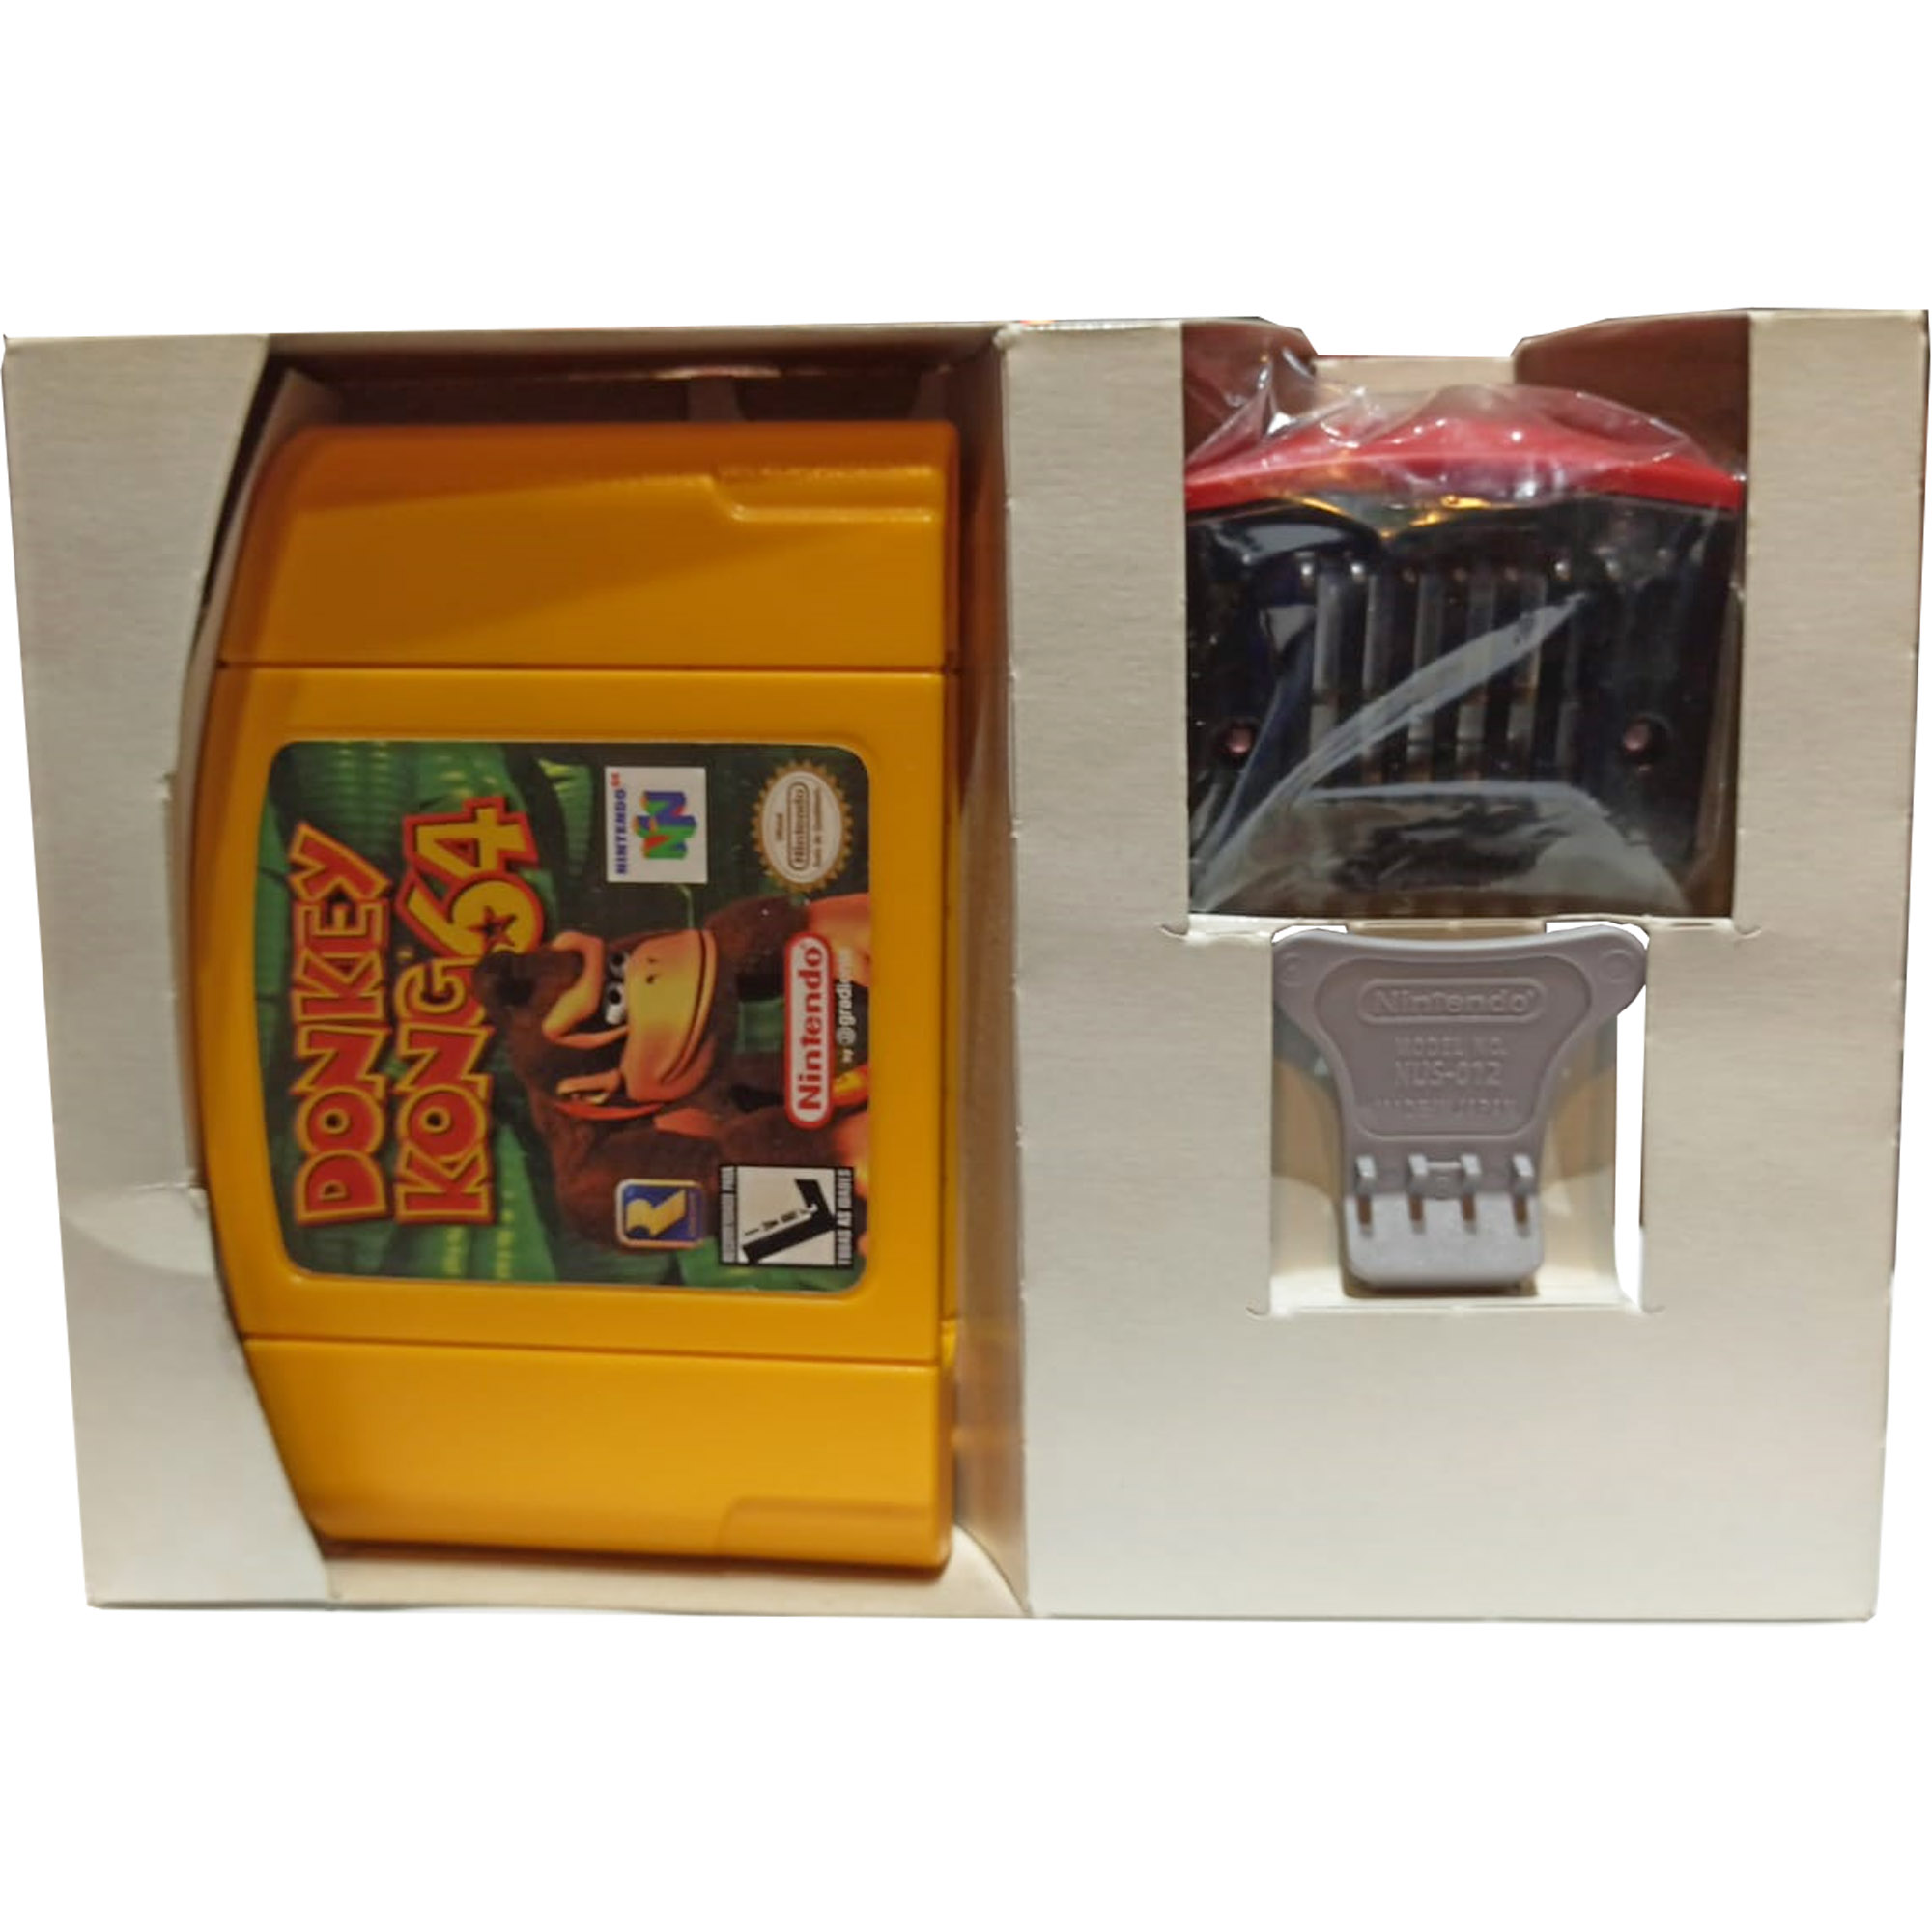 Donkey Kong 64 Edição De Colecionador Com Cartucho De Expansão Incluso - Nintendo 64 Usado